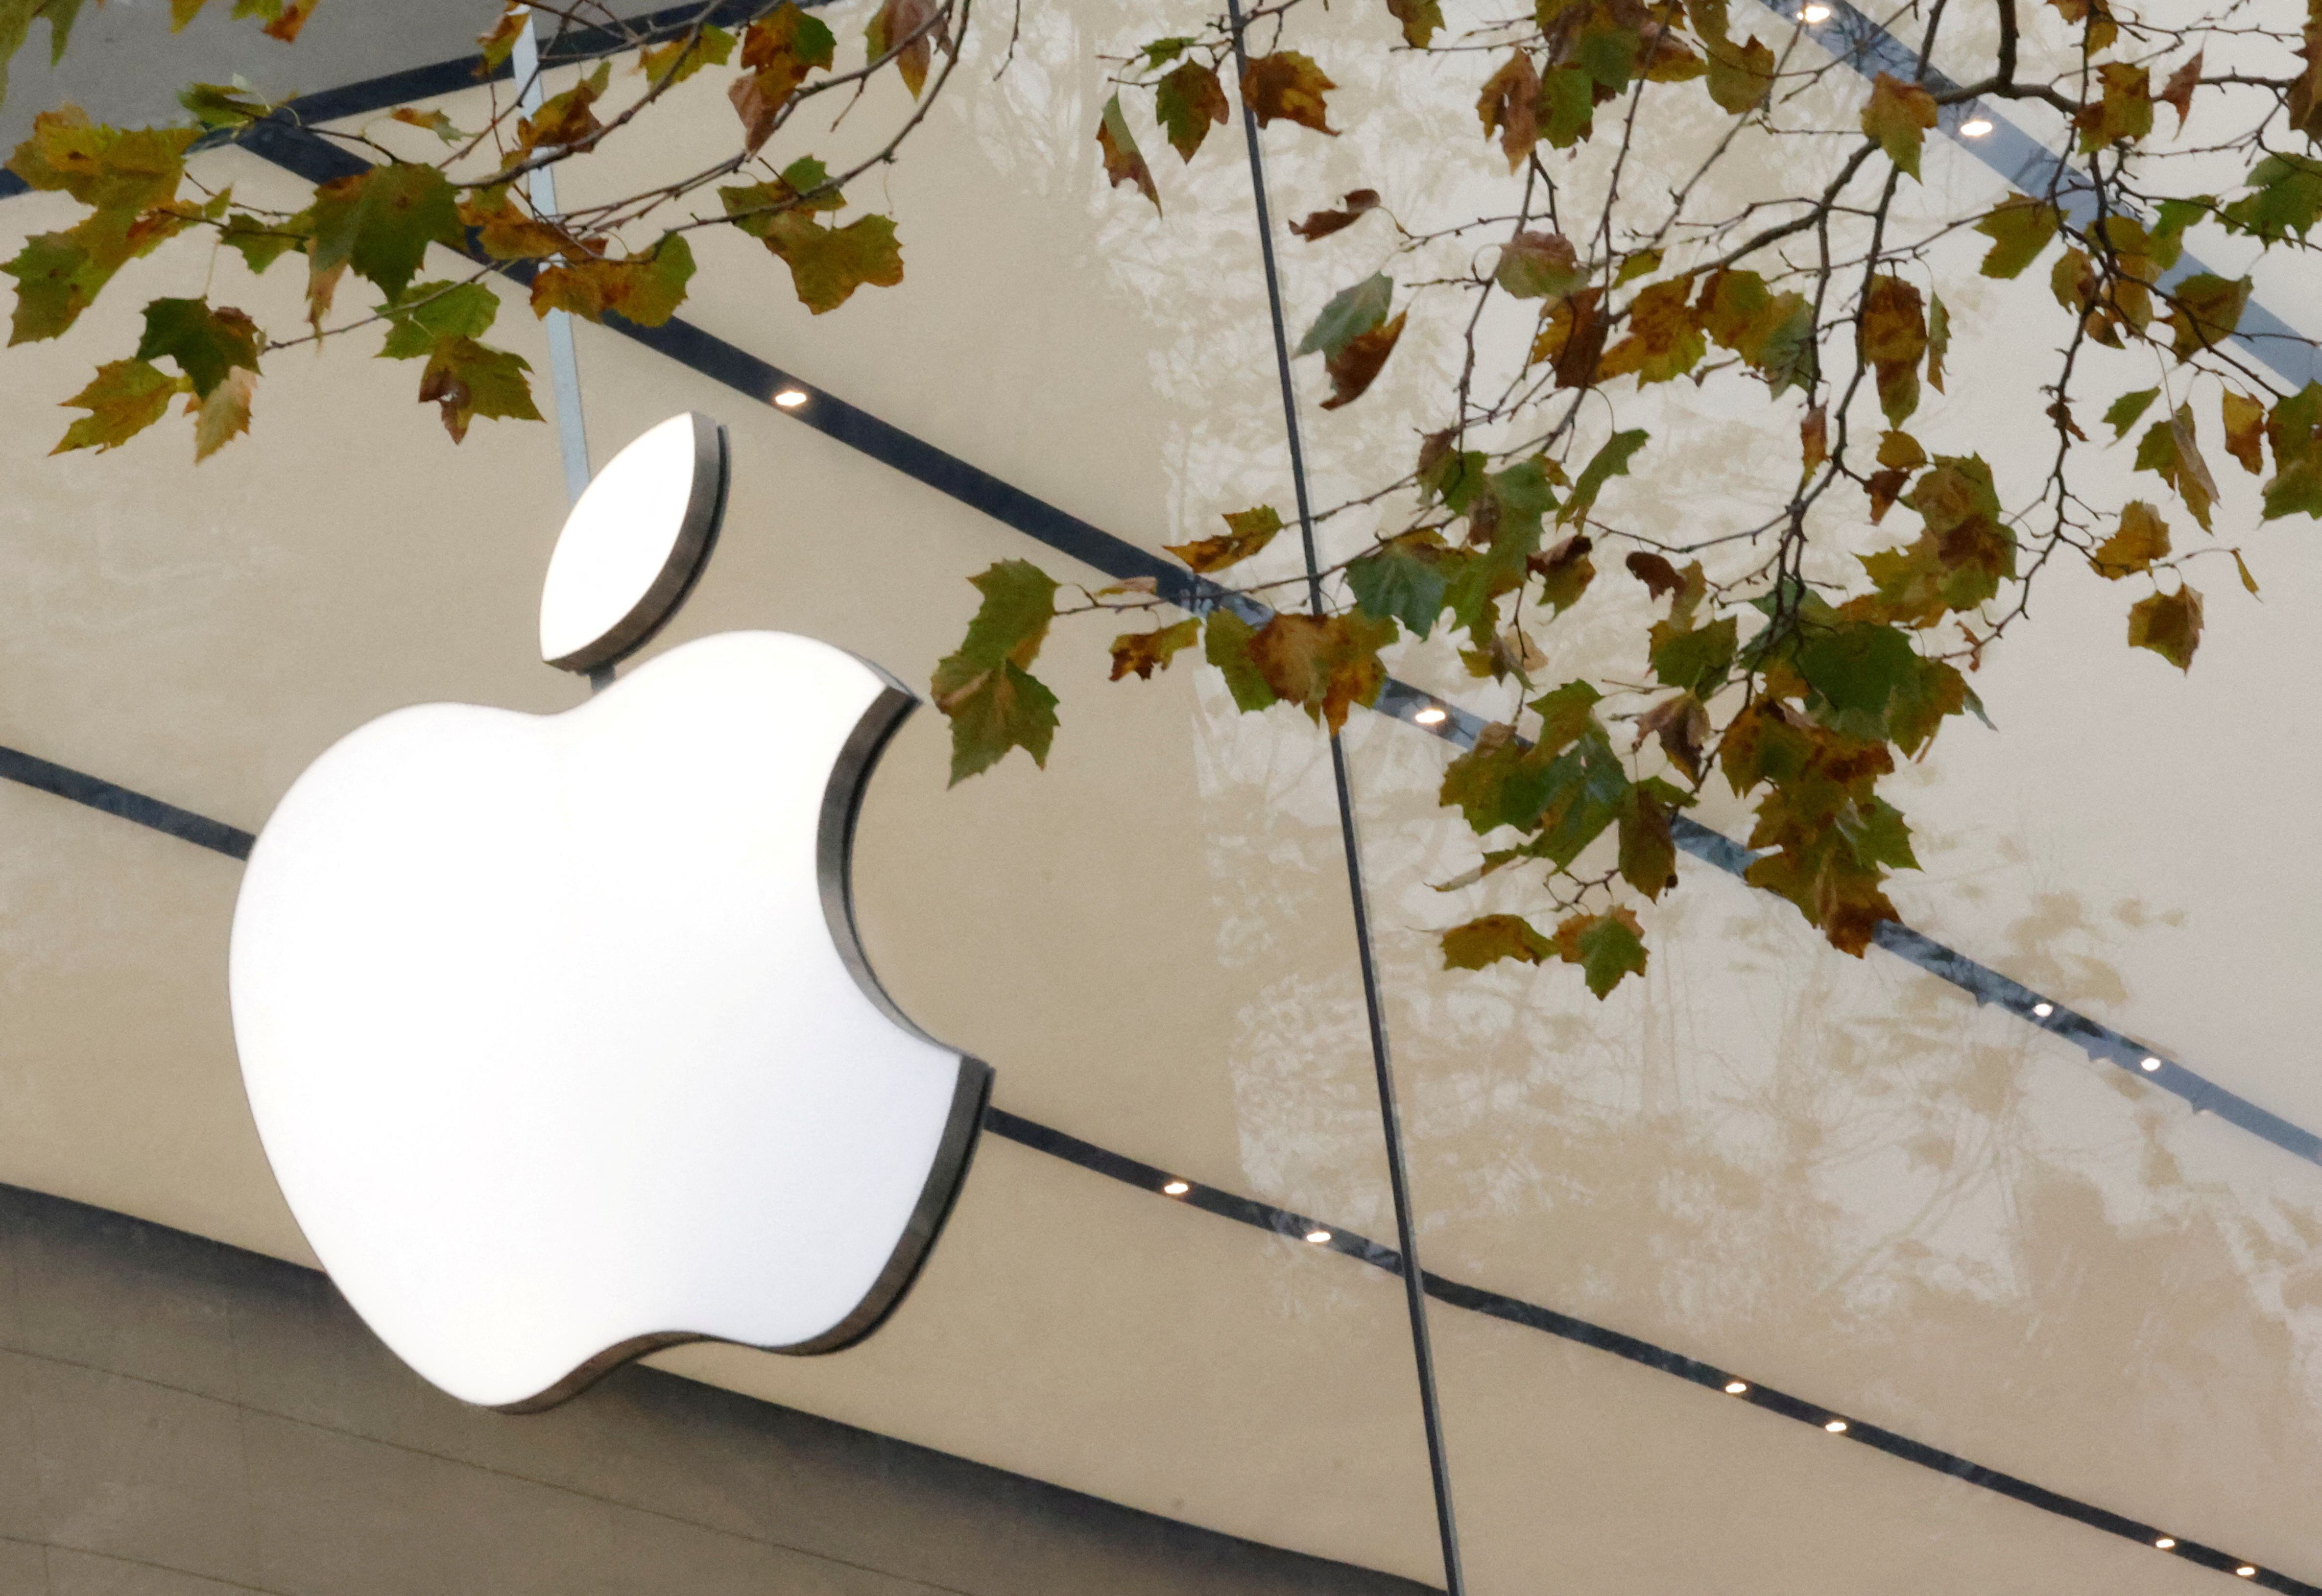 Apple con esta inciativa se mantiene como uno de los referentes en este sector. (Foto: REUTERS/Yves Herman/File Photo)